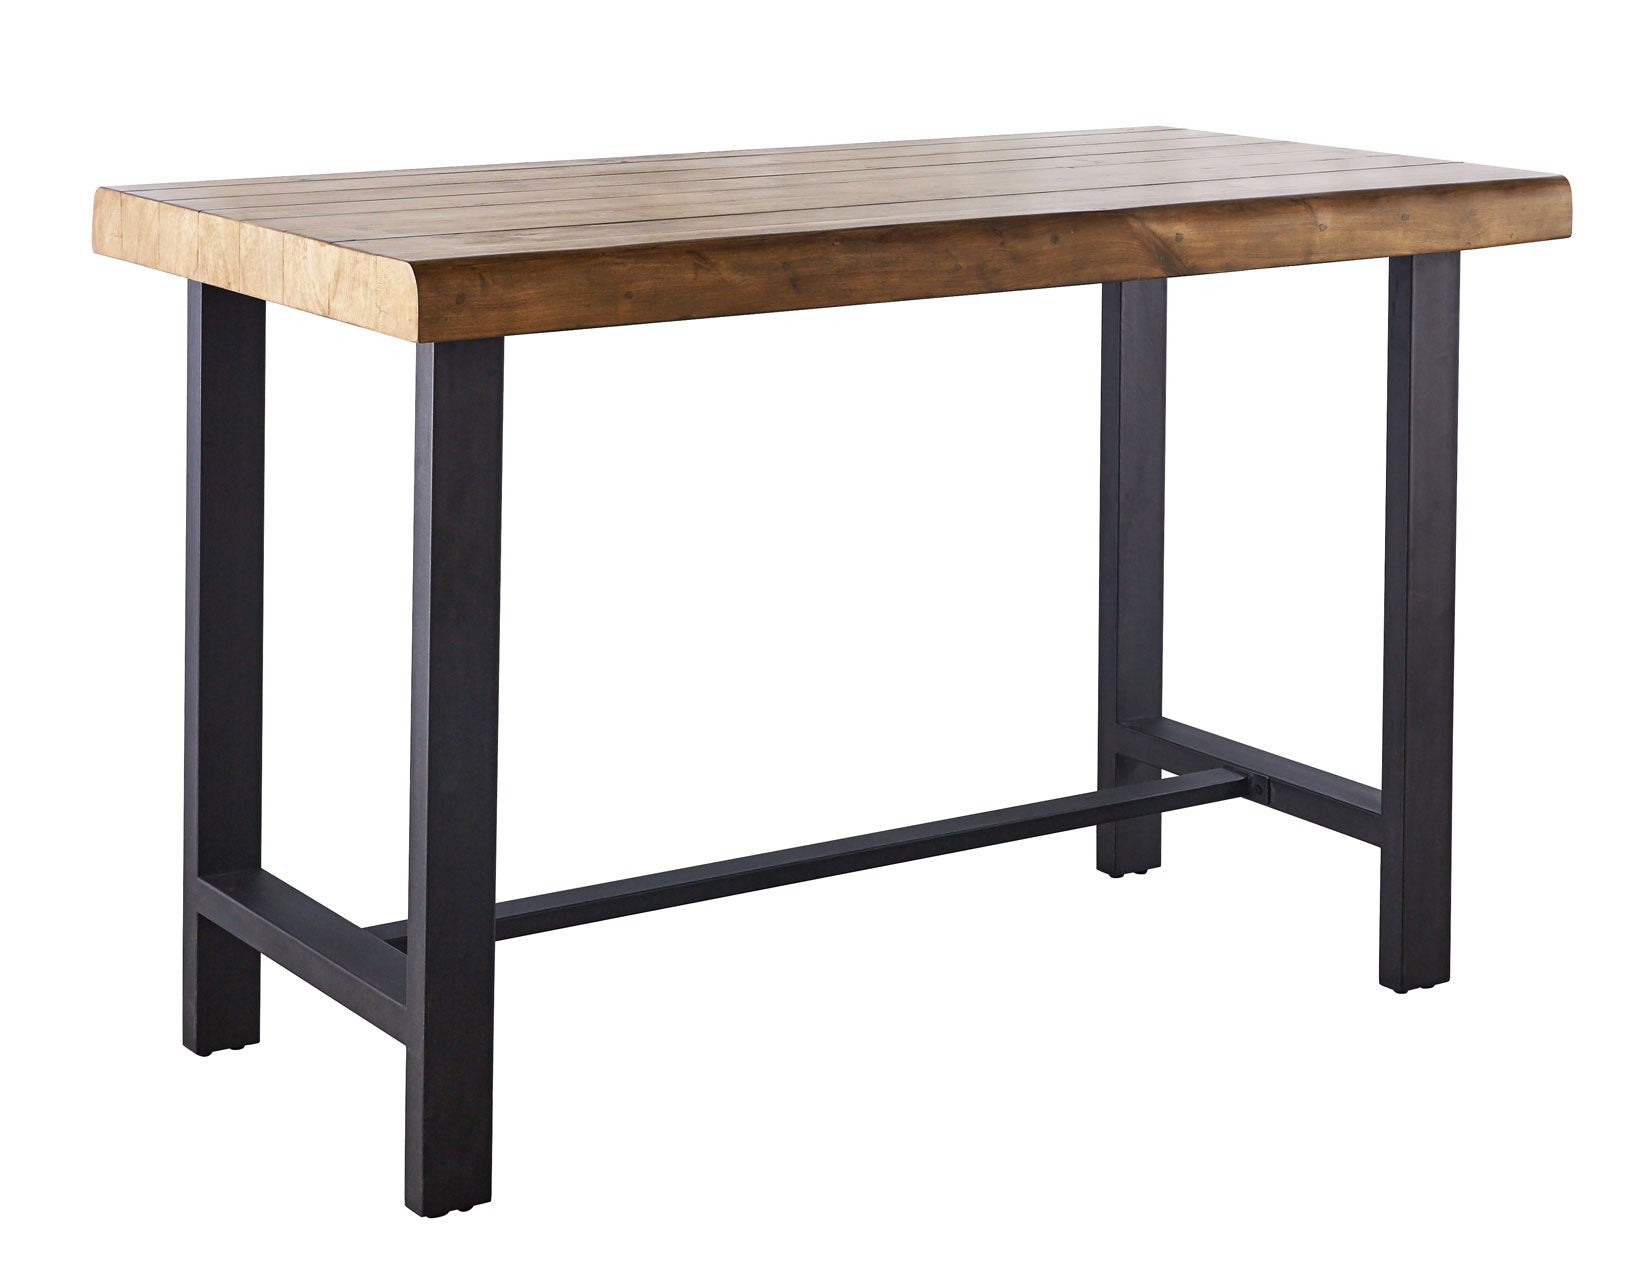 Landon 60" Natural Honey Wood and Metal Counter Table